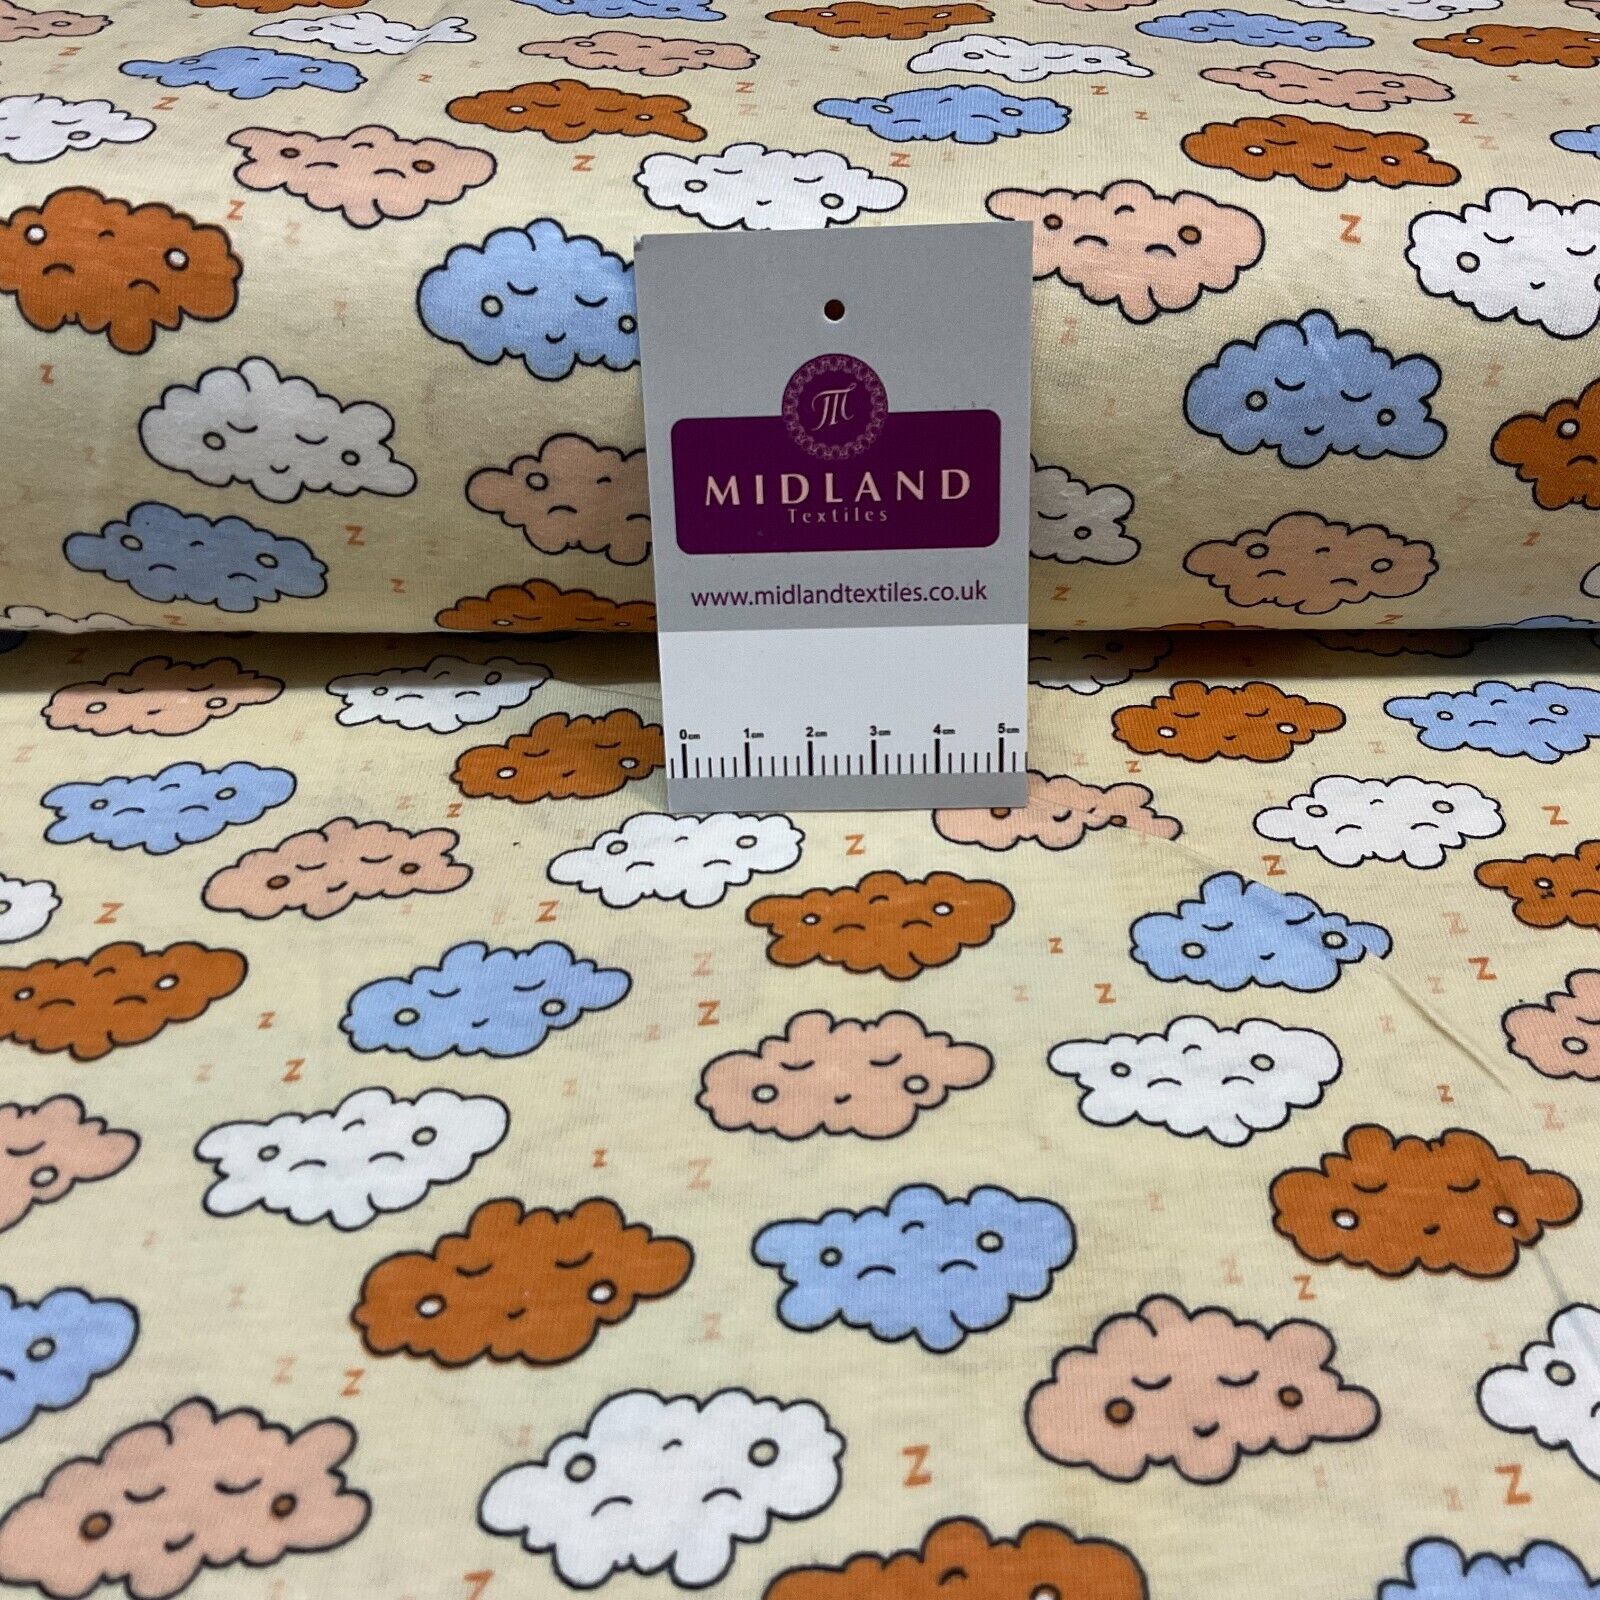 Children's Sleeping Cloud cotton stretch jersey novelty dress fabric M1713